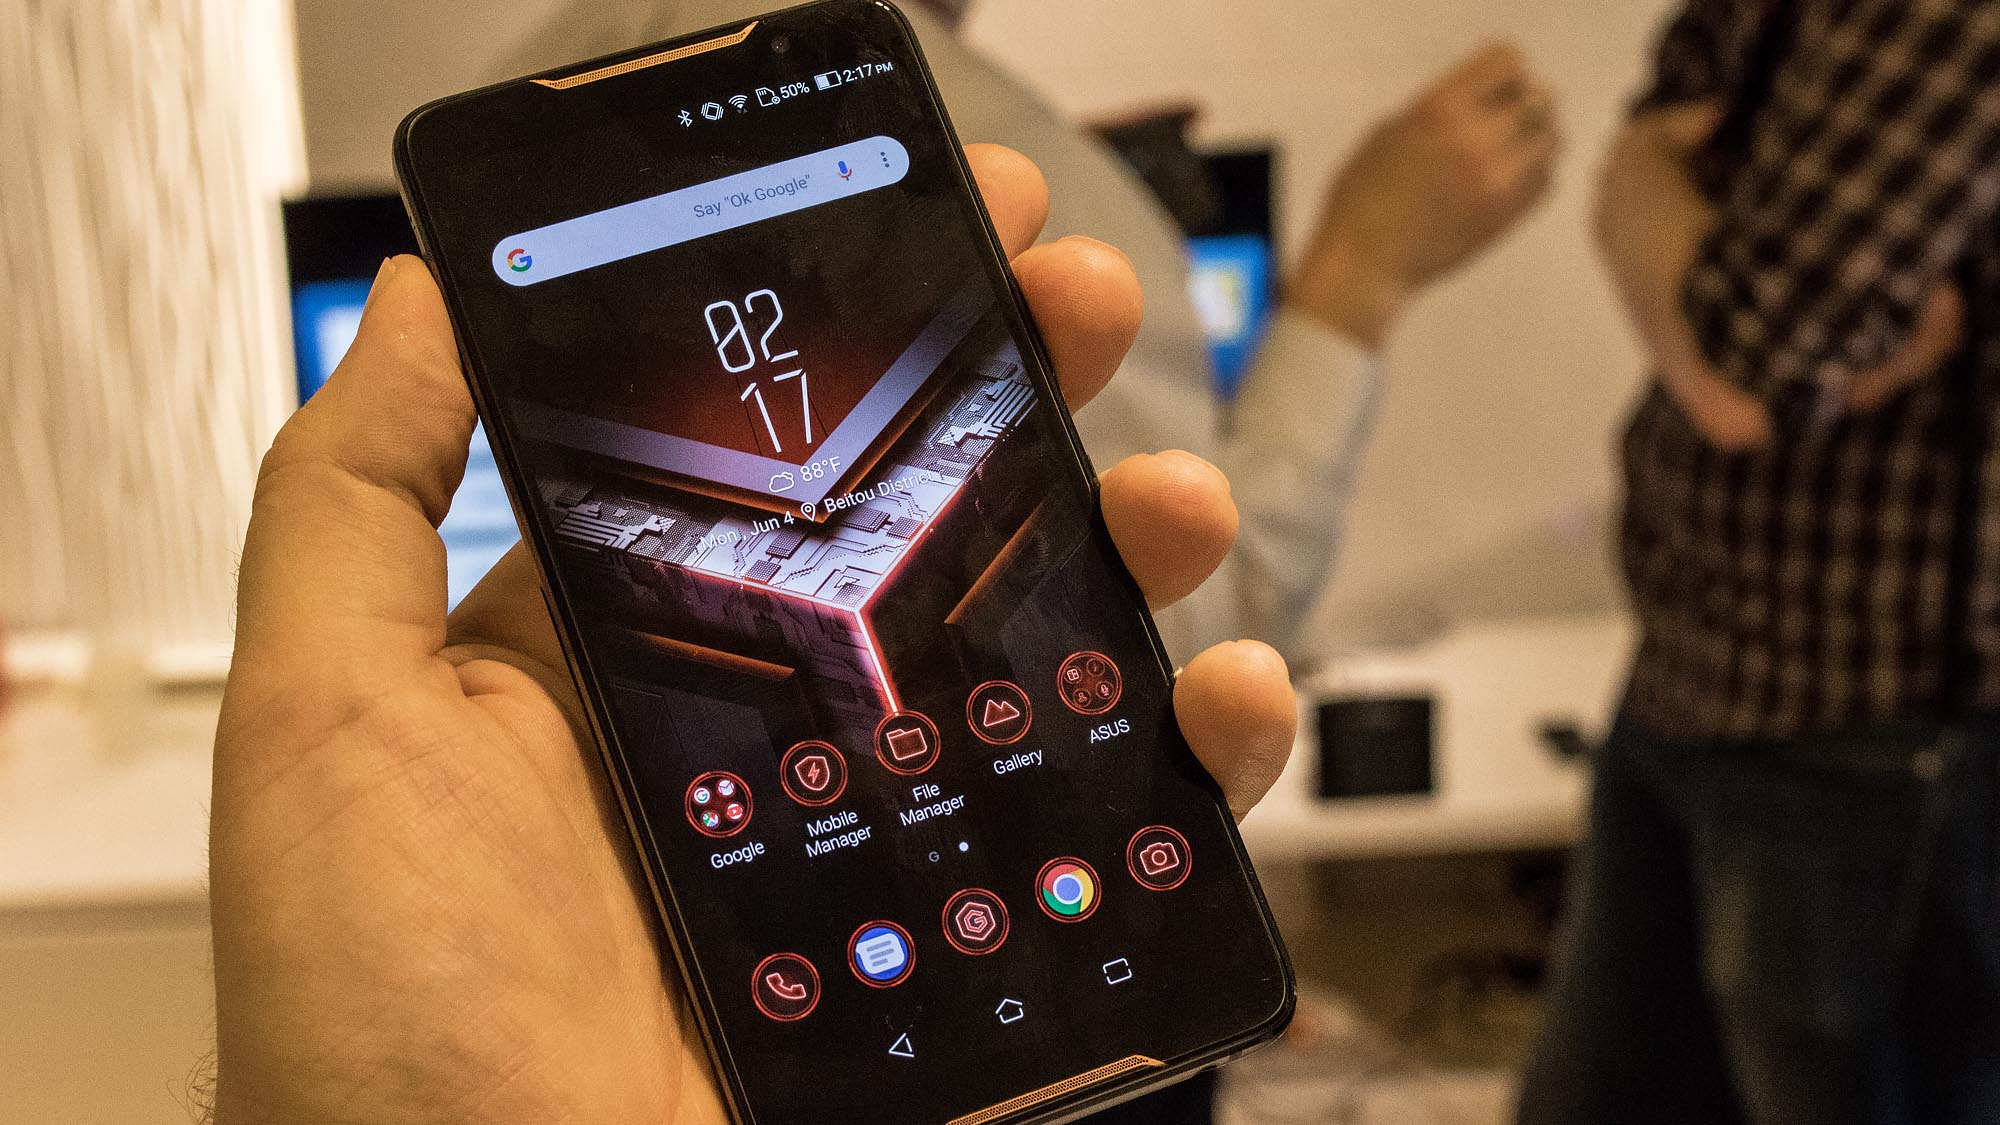 Asus ROG Mobile Reviews: Använd omedelbart den "snabbaste smarttelefonen i världen"